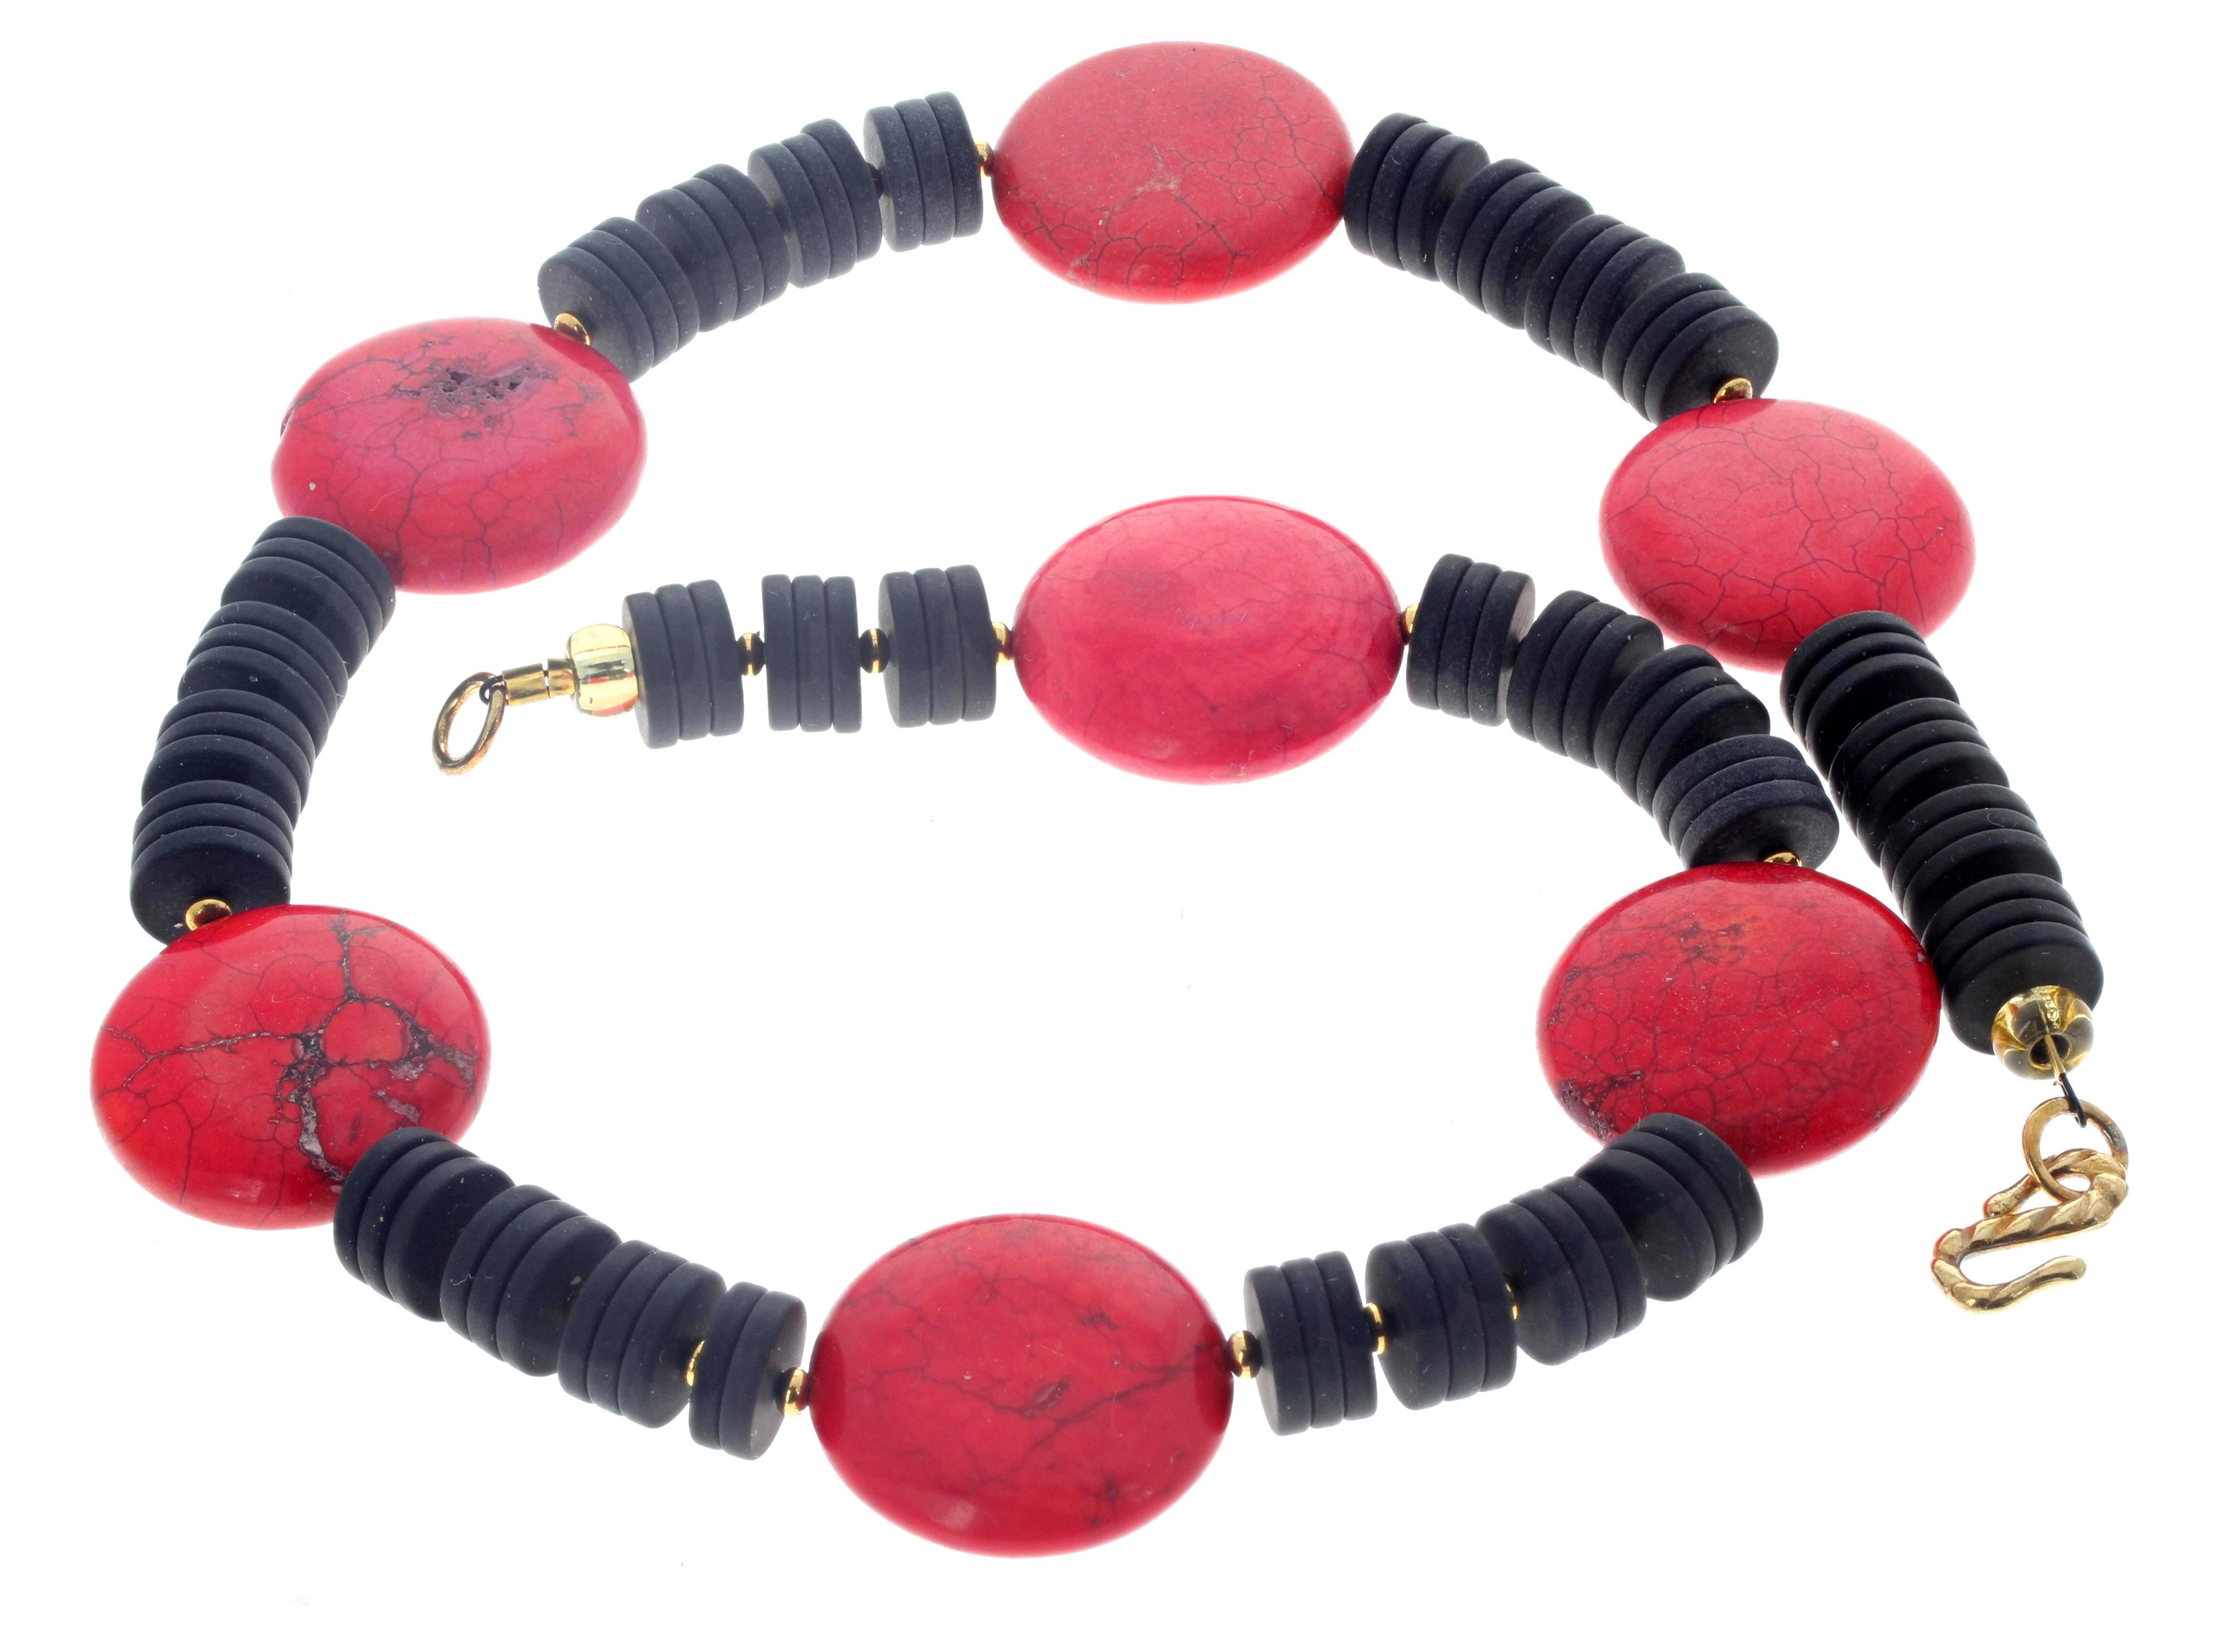 Dieser schöne natürliche schwarze Onyx und rote Magnesit  Die Halskette ist 18 1/2 Zoll lang.  Die größten runden roten Magnesite sind ca. 25mm und die schwarzen Onyxe sind ca. 10mm groß.  Der vergoldete Verschluss ist ein einfach zu bedienender